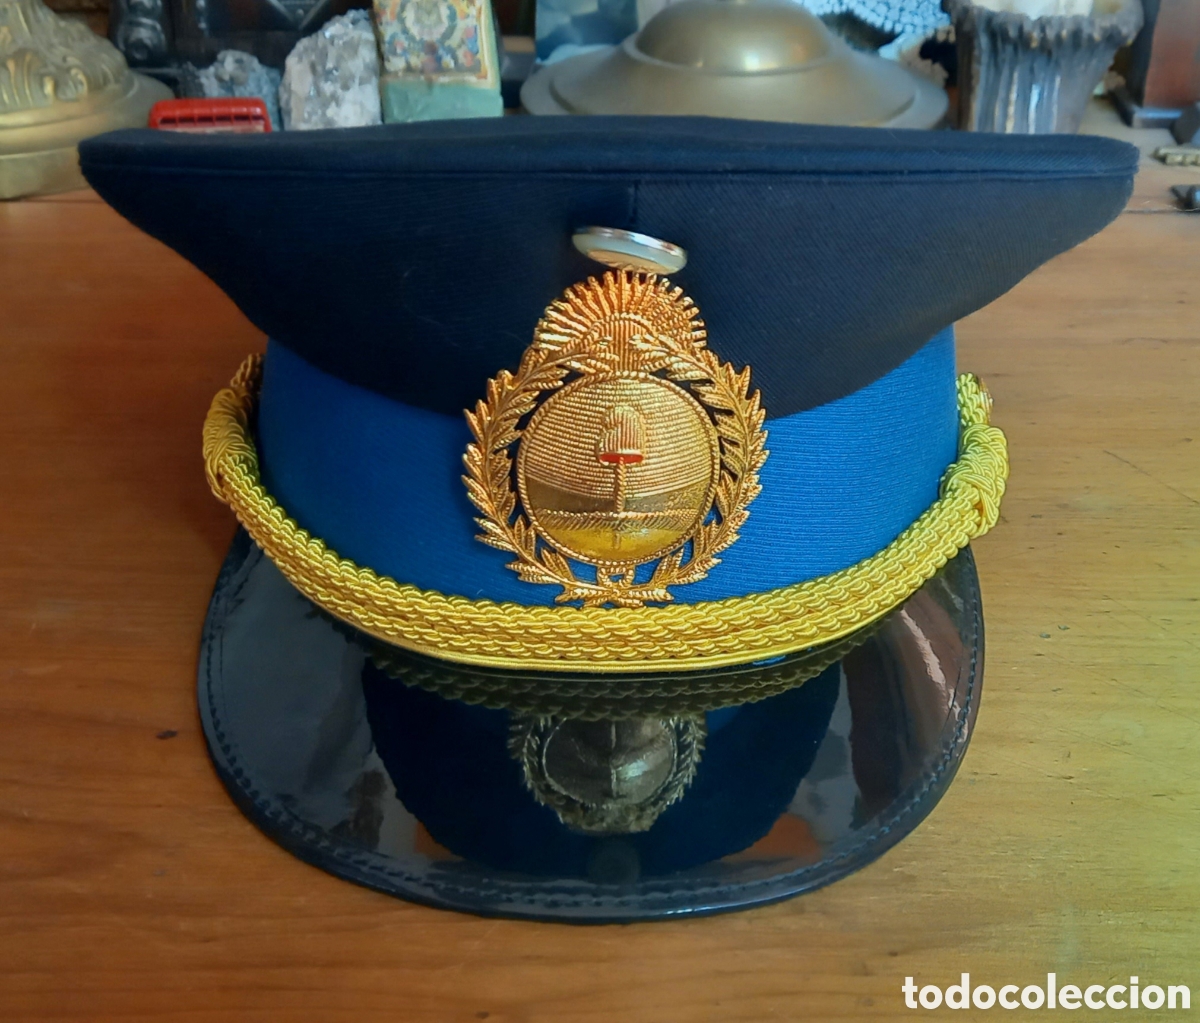 fiesta borde Examinar detenidamente antigua gorra de policía federal argentina - Compra venta en todocoleccion